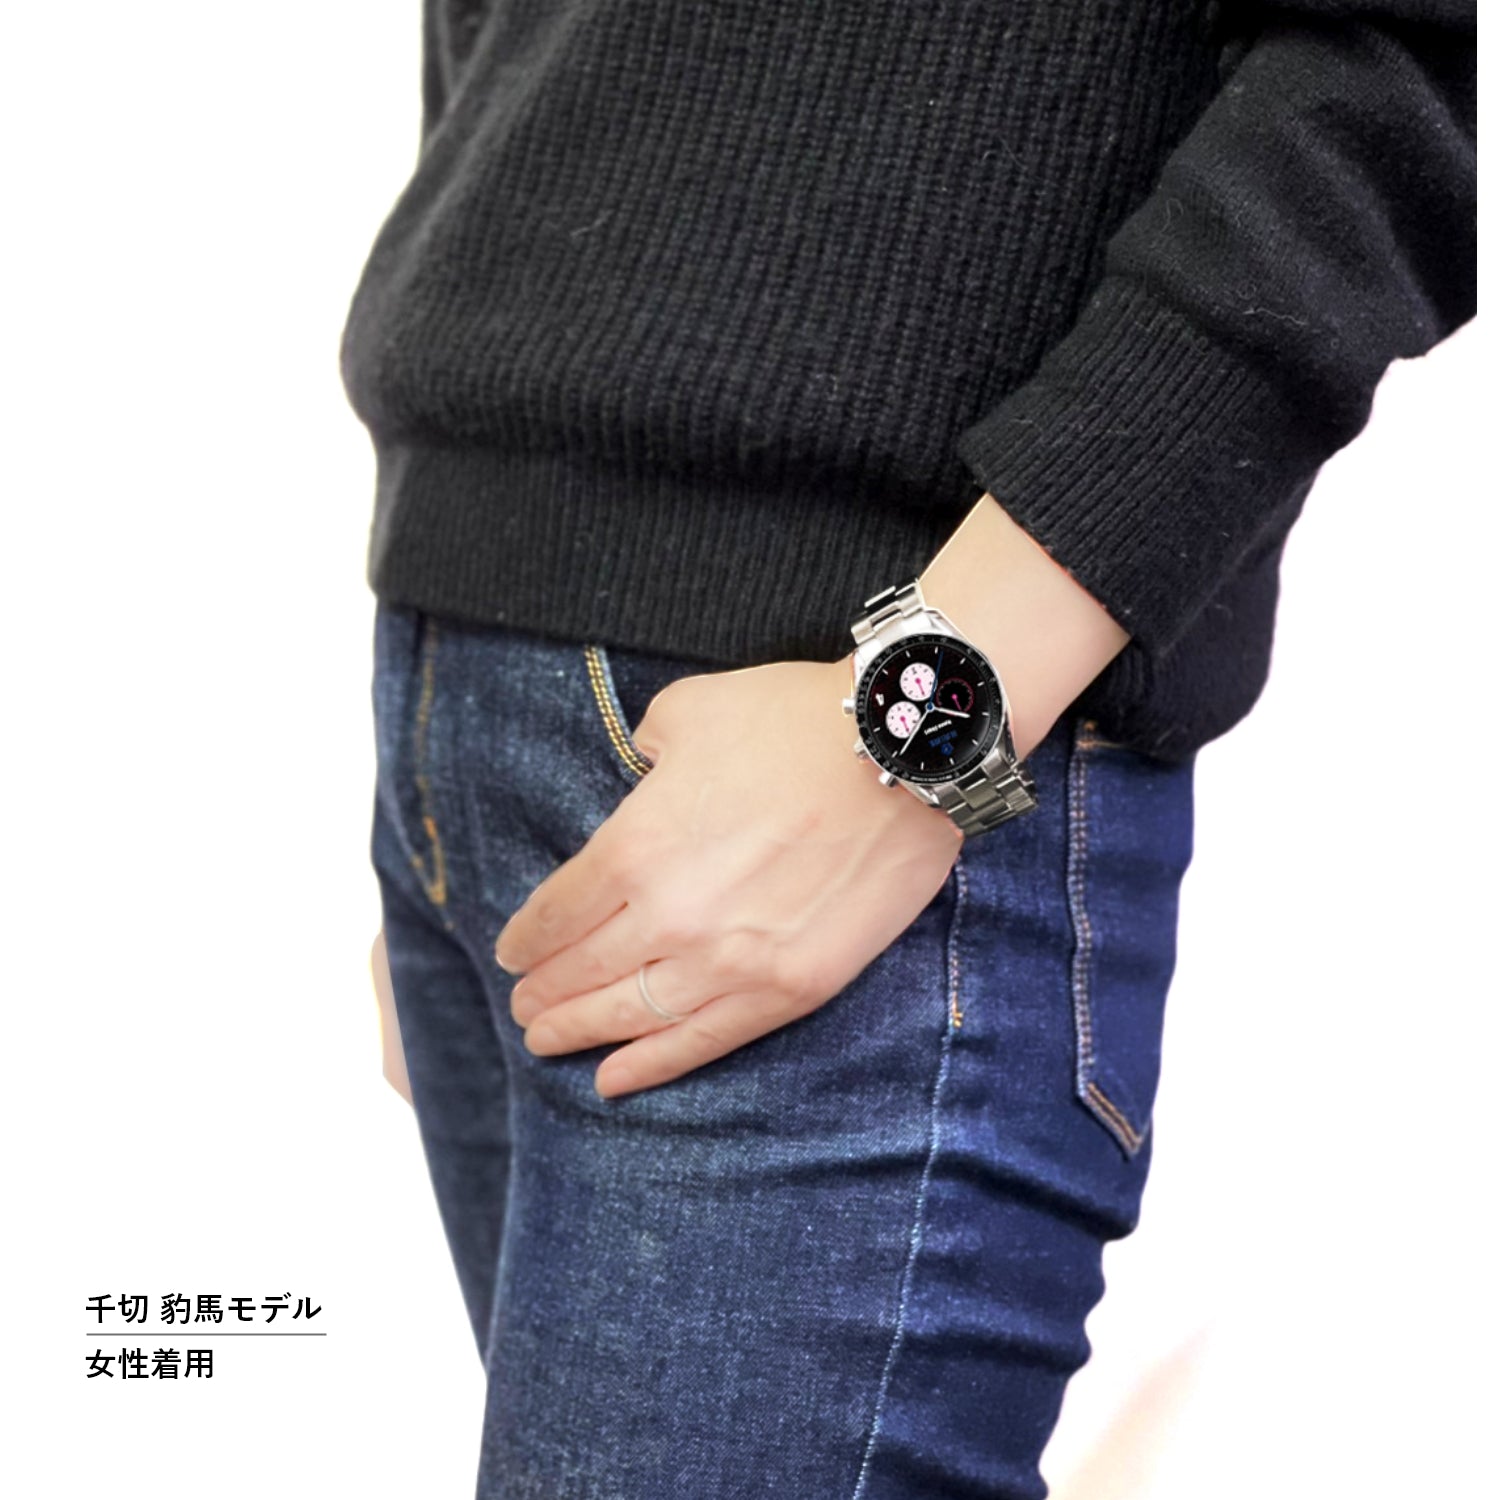 テレビアニメ「ブルーロック」オフィシャルクロノグラフ腕時計 糸師 凛 - 公式通販サイト「アニメコレクション/Anime Collection」